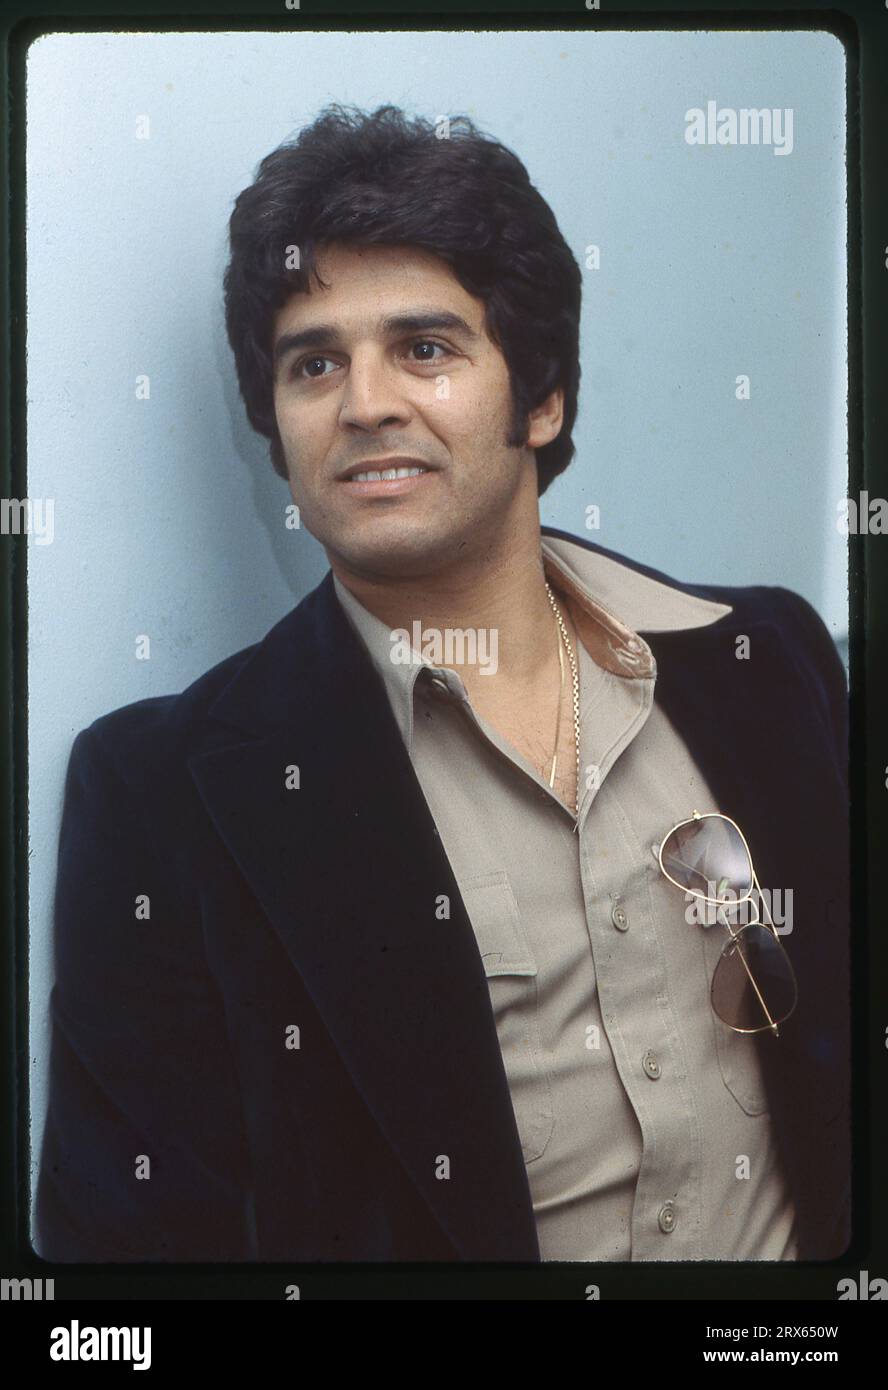 Portrait de l'acteur Eric Estrada, surtout connu pour avoir joué le ponch cop dans l'émission de télévision Chips. Il devient plus tard officier de police de réserve en Indiana et en Virginie. Lors d'un événement sportif de célébrités à Manhattan en 1978. Banque D'Images